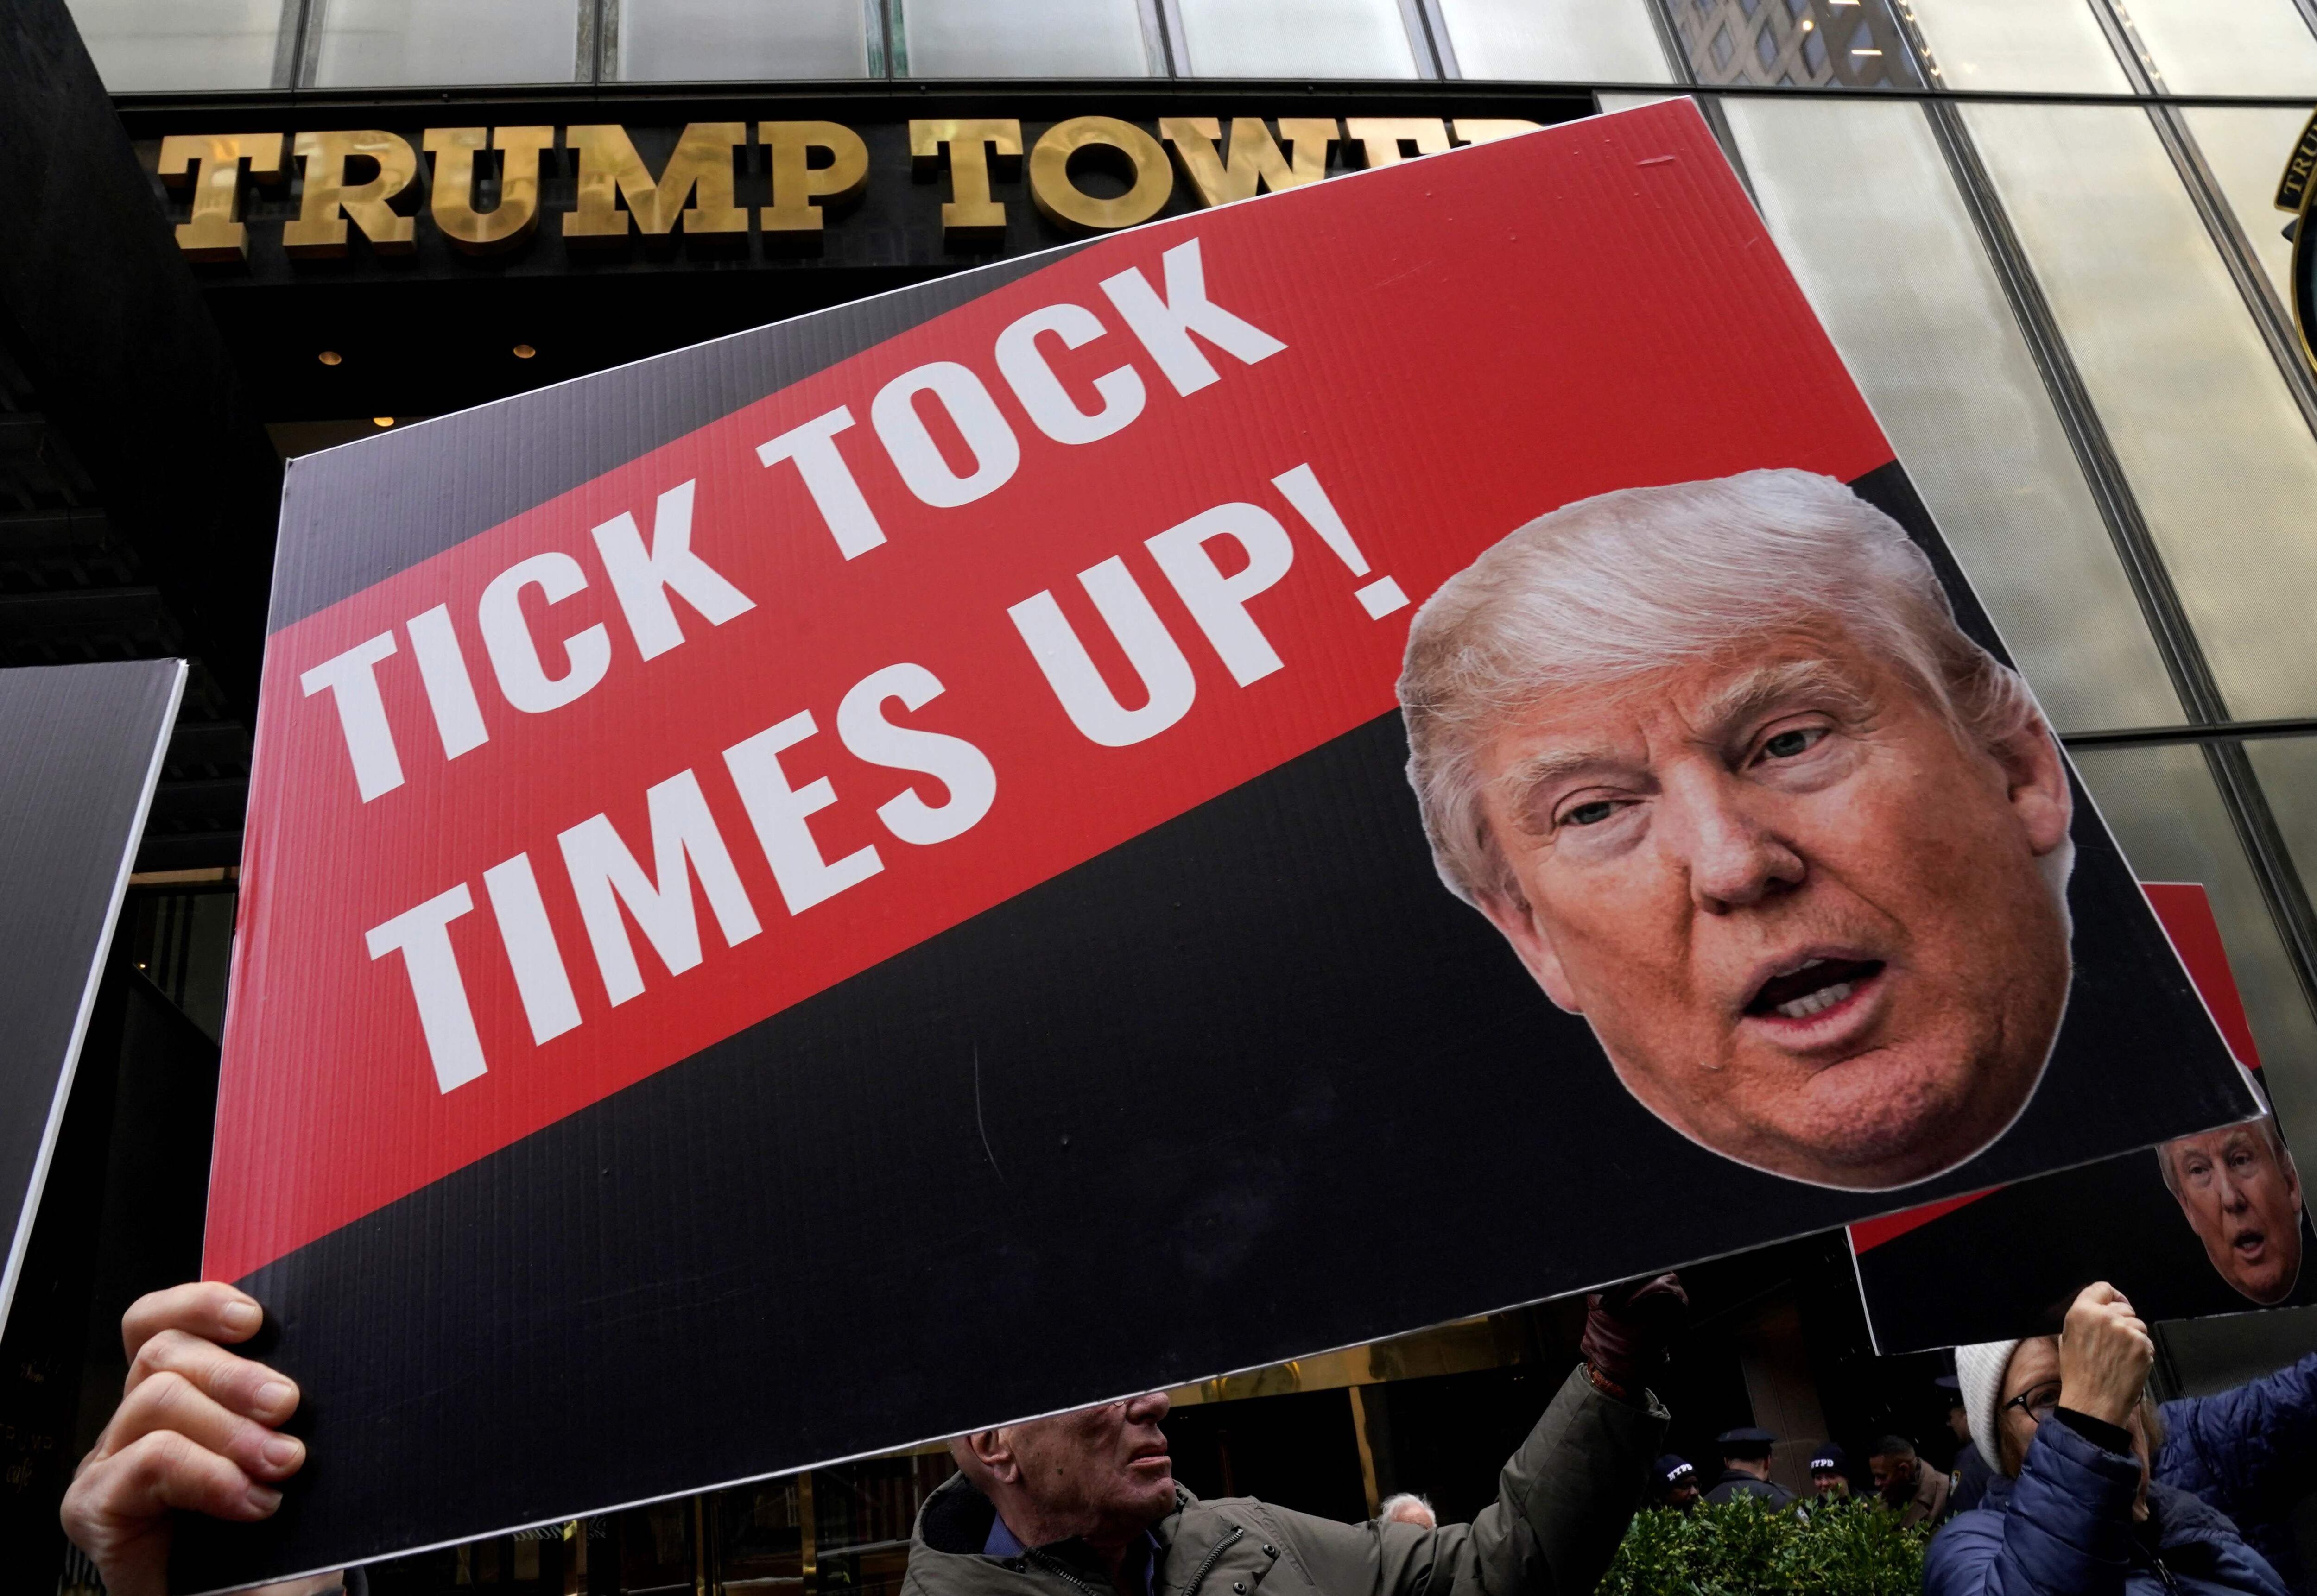 Manifestantes reuniods en frente de la Trump Tower en Nueva York, este viernes 31 de marzo. (Photo by TIMOTHY A. CLARY / AFP)